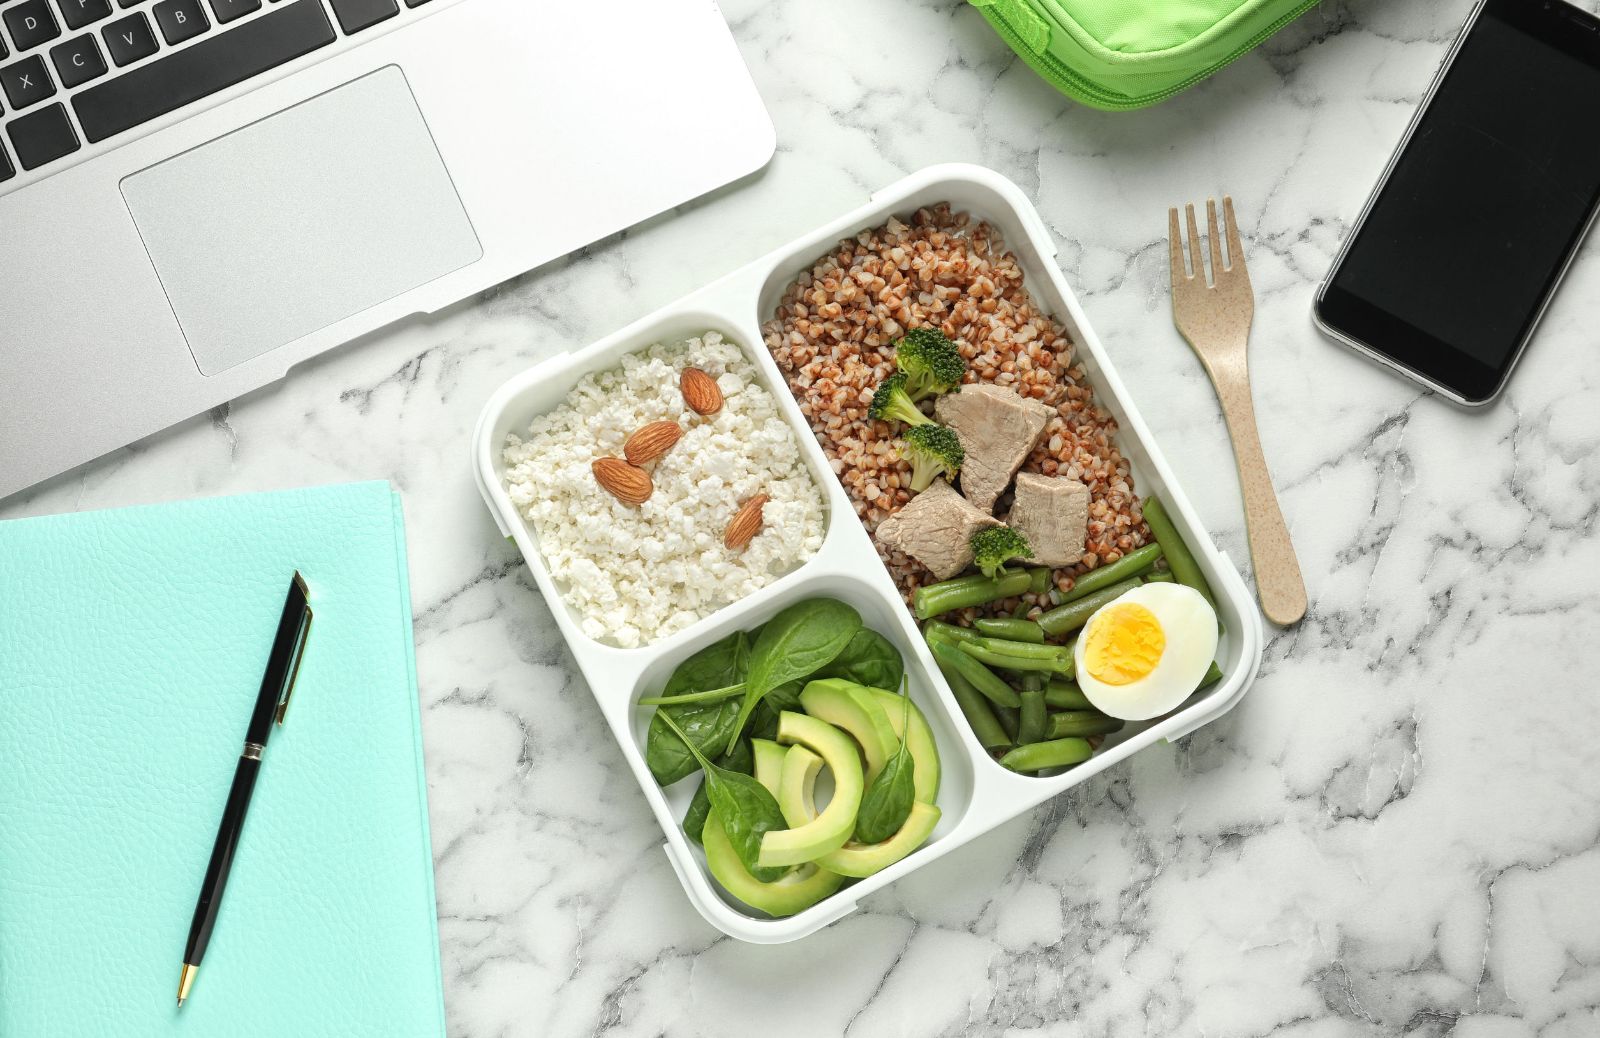 Pausa pranzo in ufficio: idee sfiziose su cosa mangiare